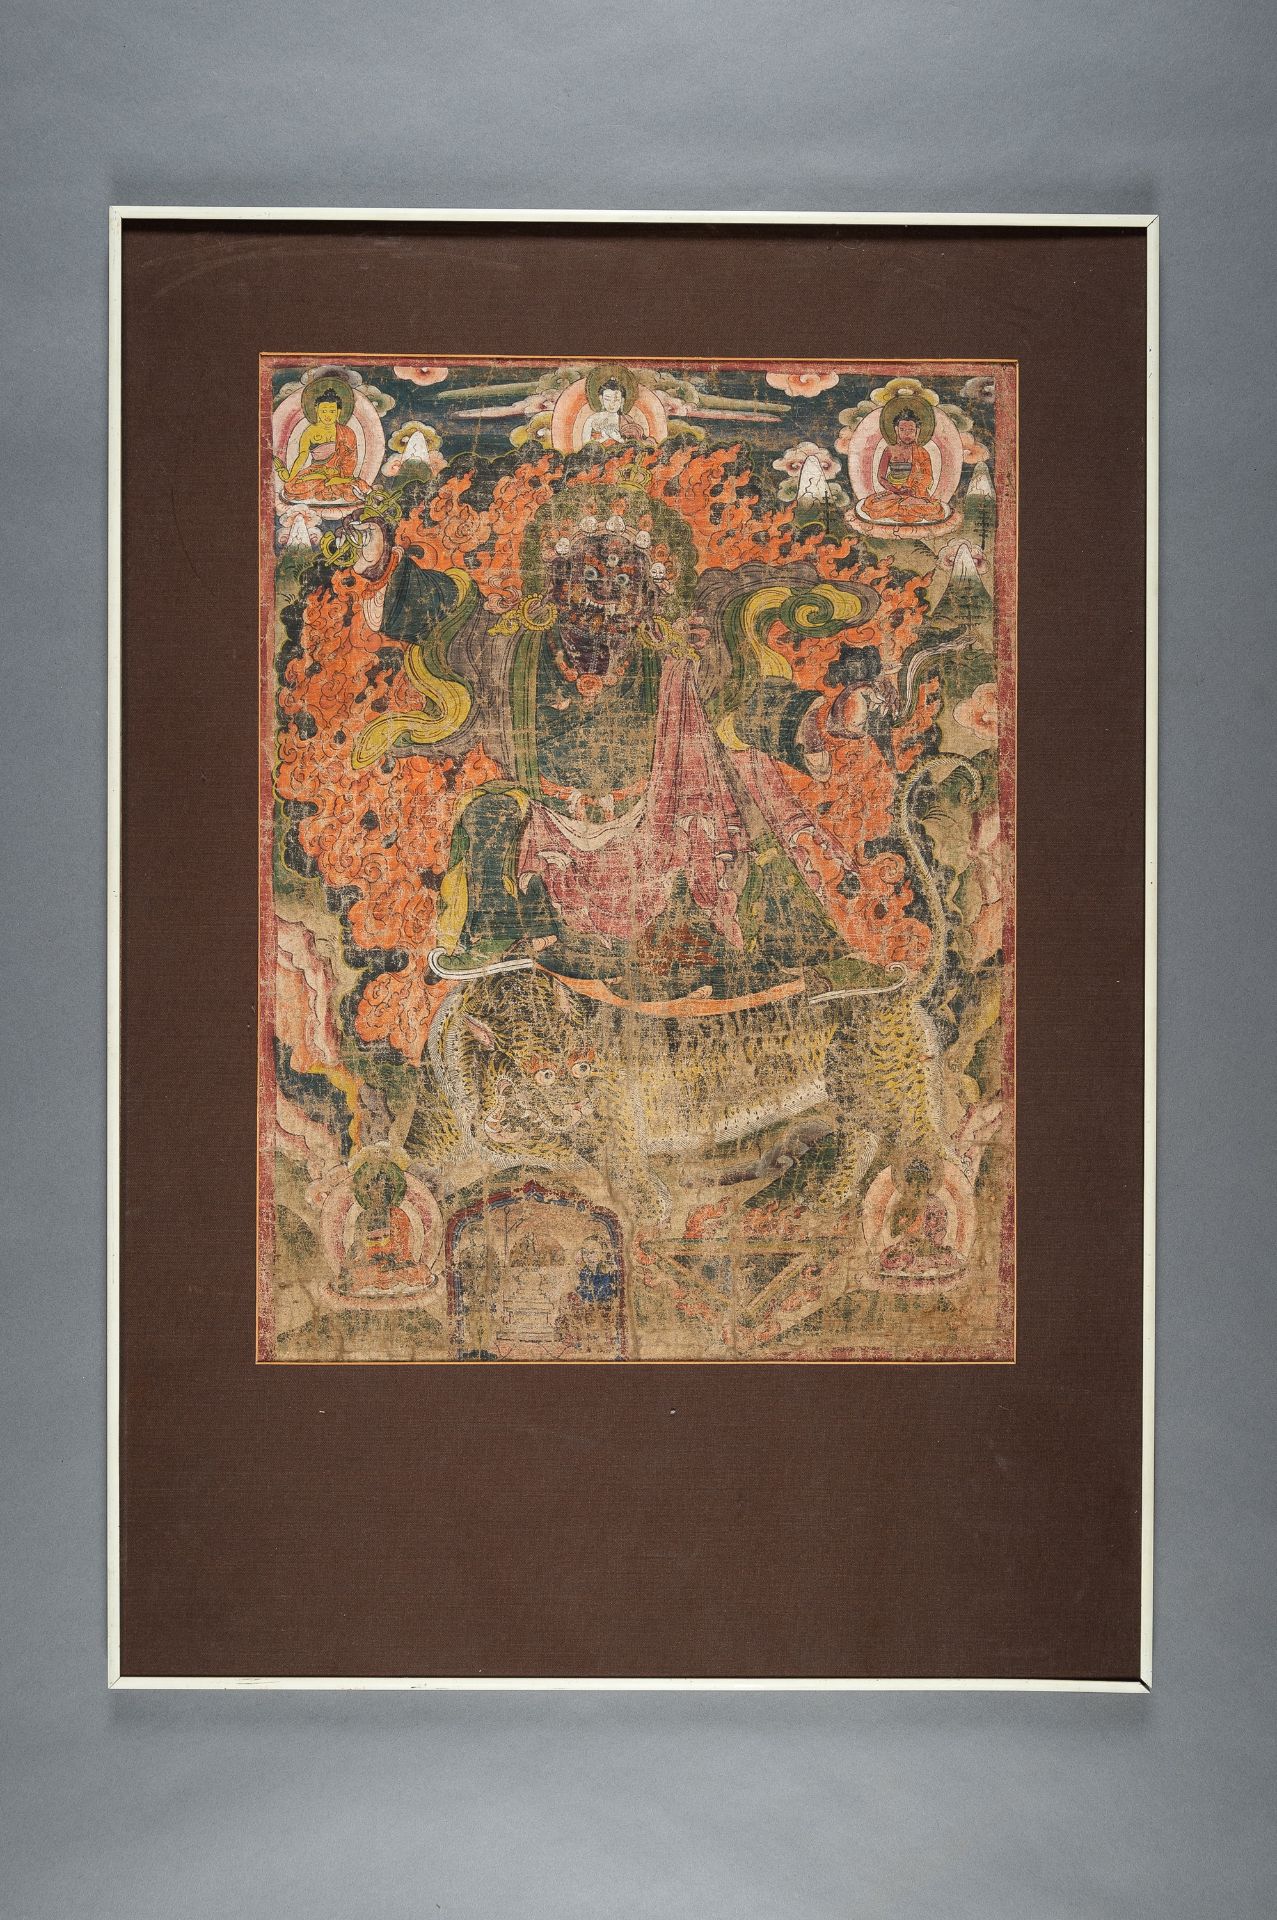 A THANGKA OF MAHAKALA RIDING A TIGER, VYAGHRA-VAHANA